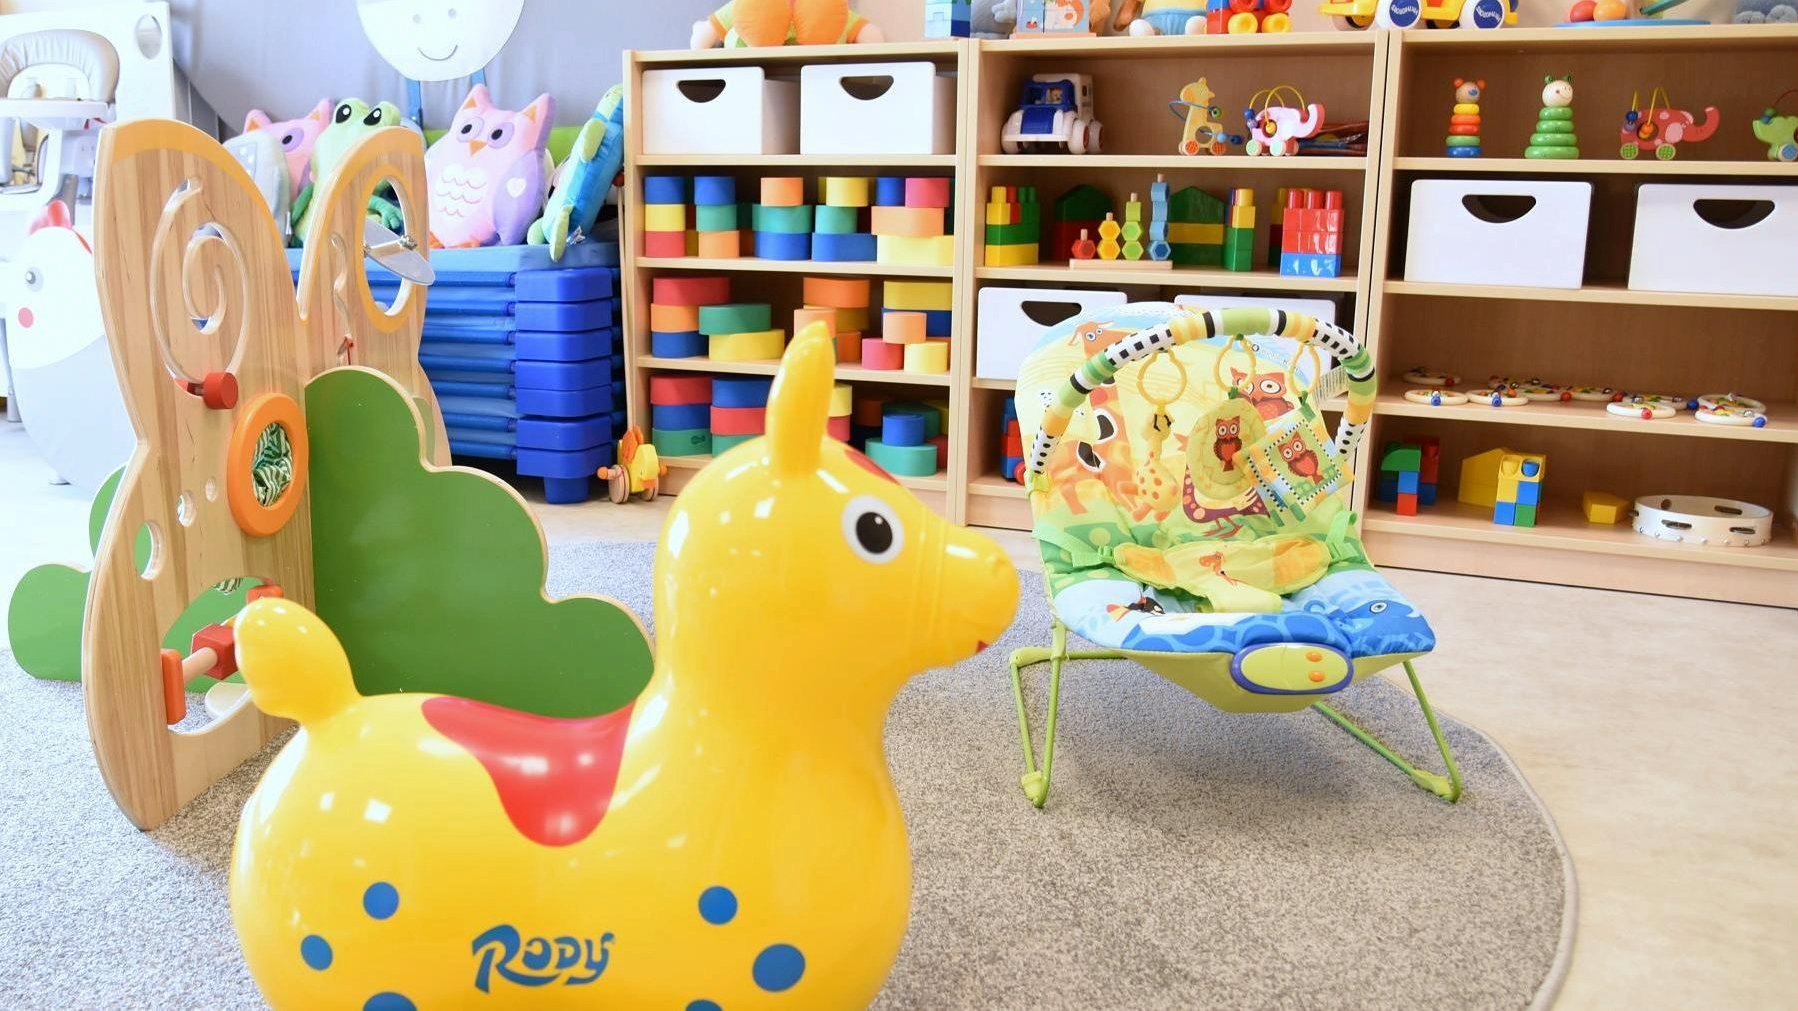 Zdjęcie przedstawia salę przedszkolną. Na pierwszym planie widać dziecięce krzesełko oraz dmuchaną zabawkę, w tle znajdują się półki z innymi zabawkami, m.in. klockami. - grafika artykułu